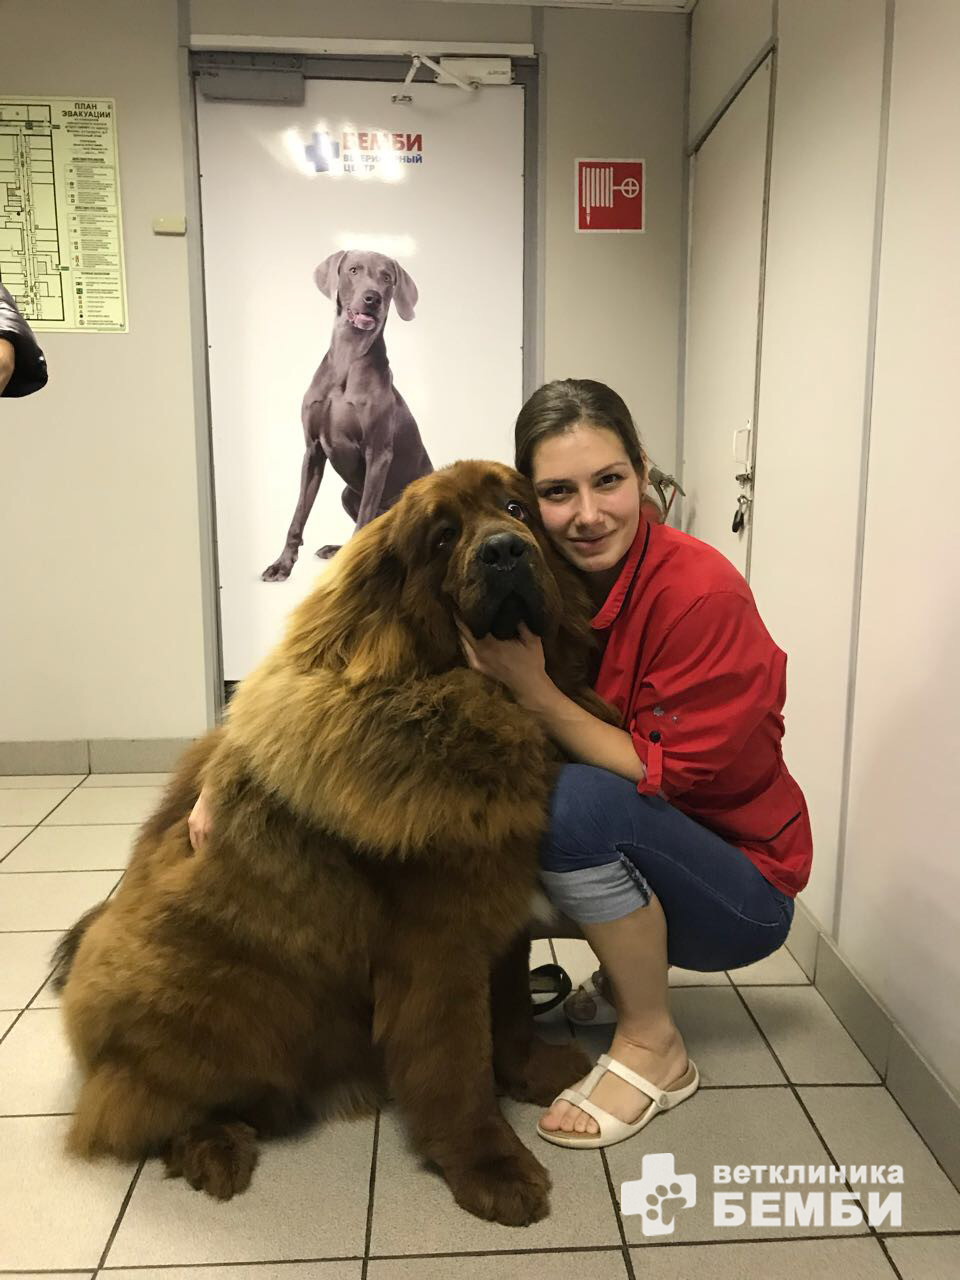 СПА салон для собак при ветеринарной клинике Бемби: результат работы мастере-грумера